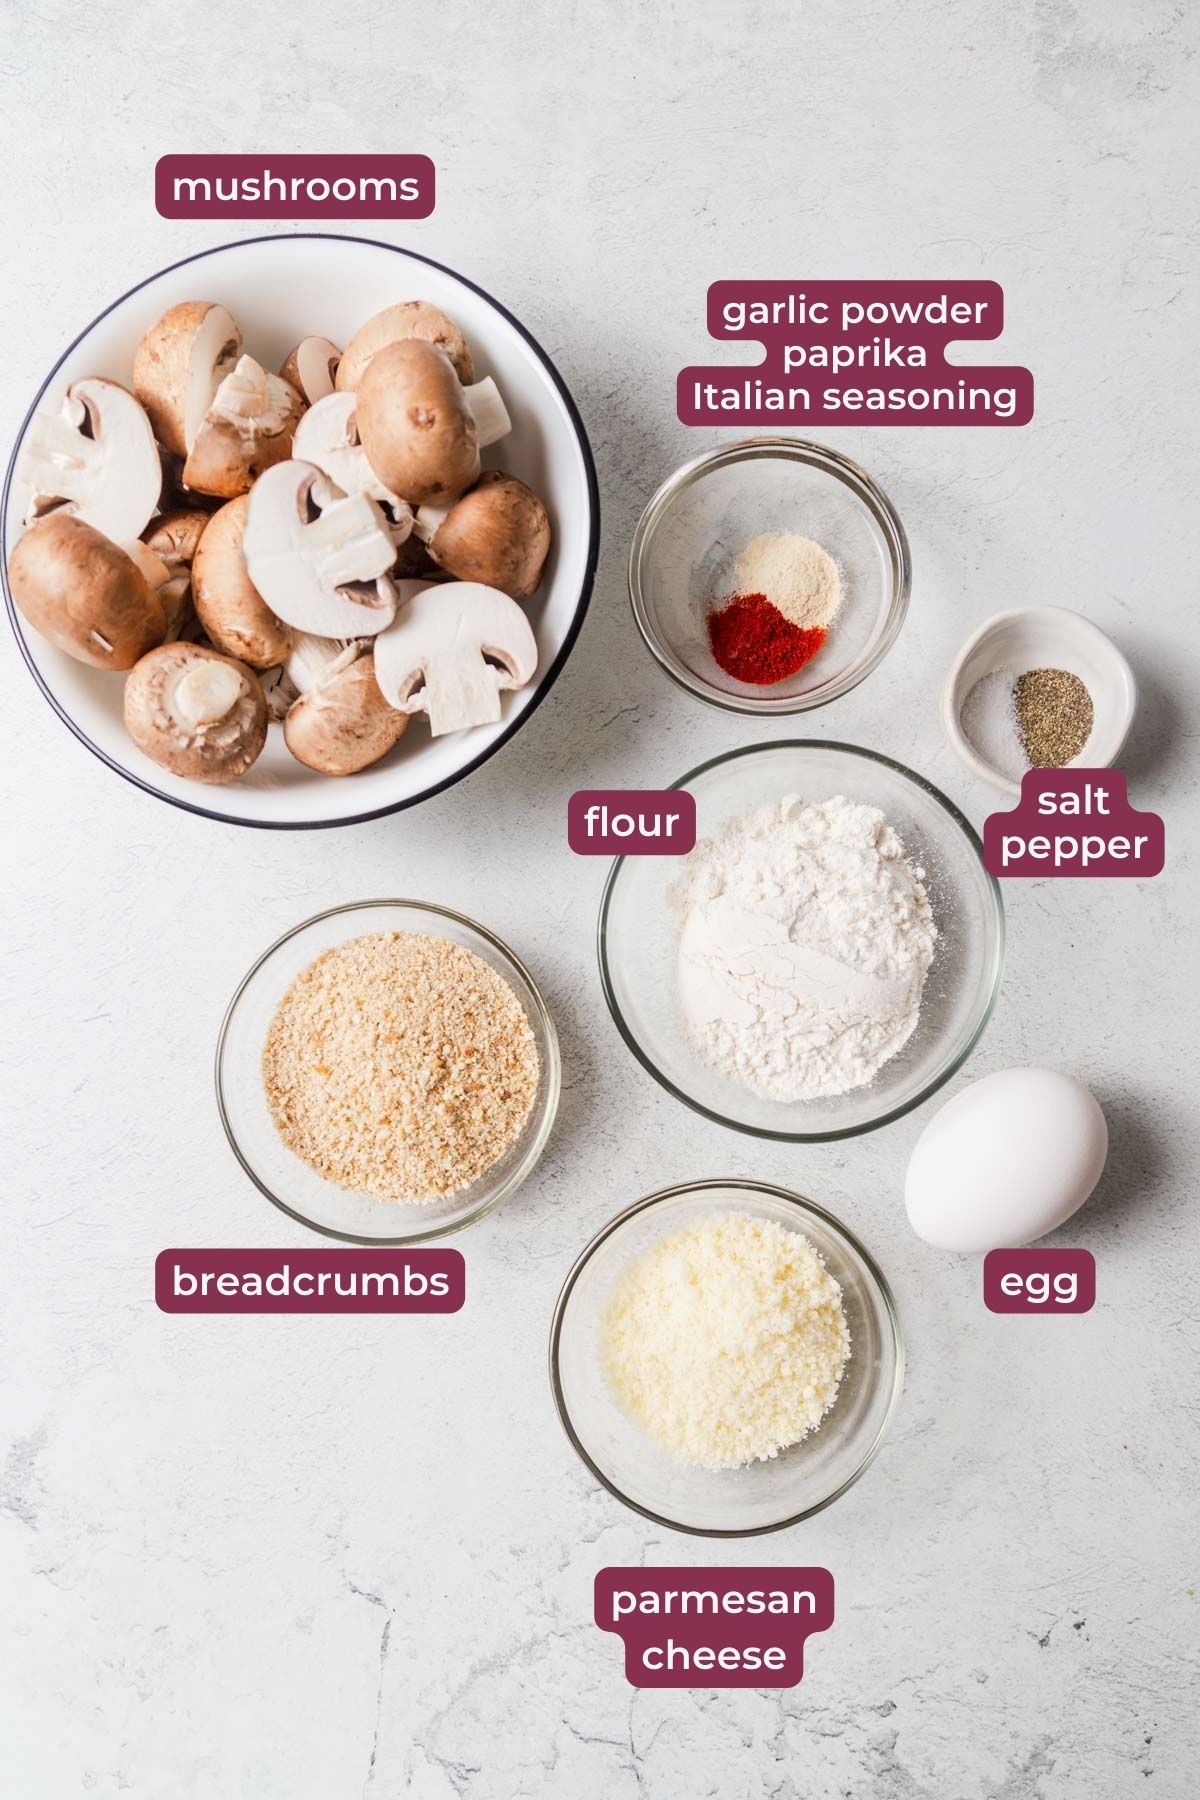 ingredients for air fryer breaded mushrooms.